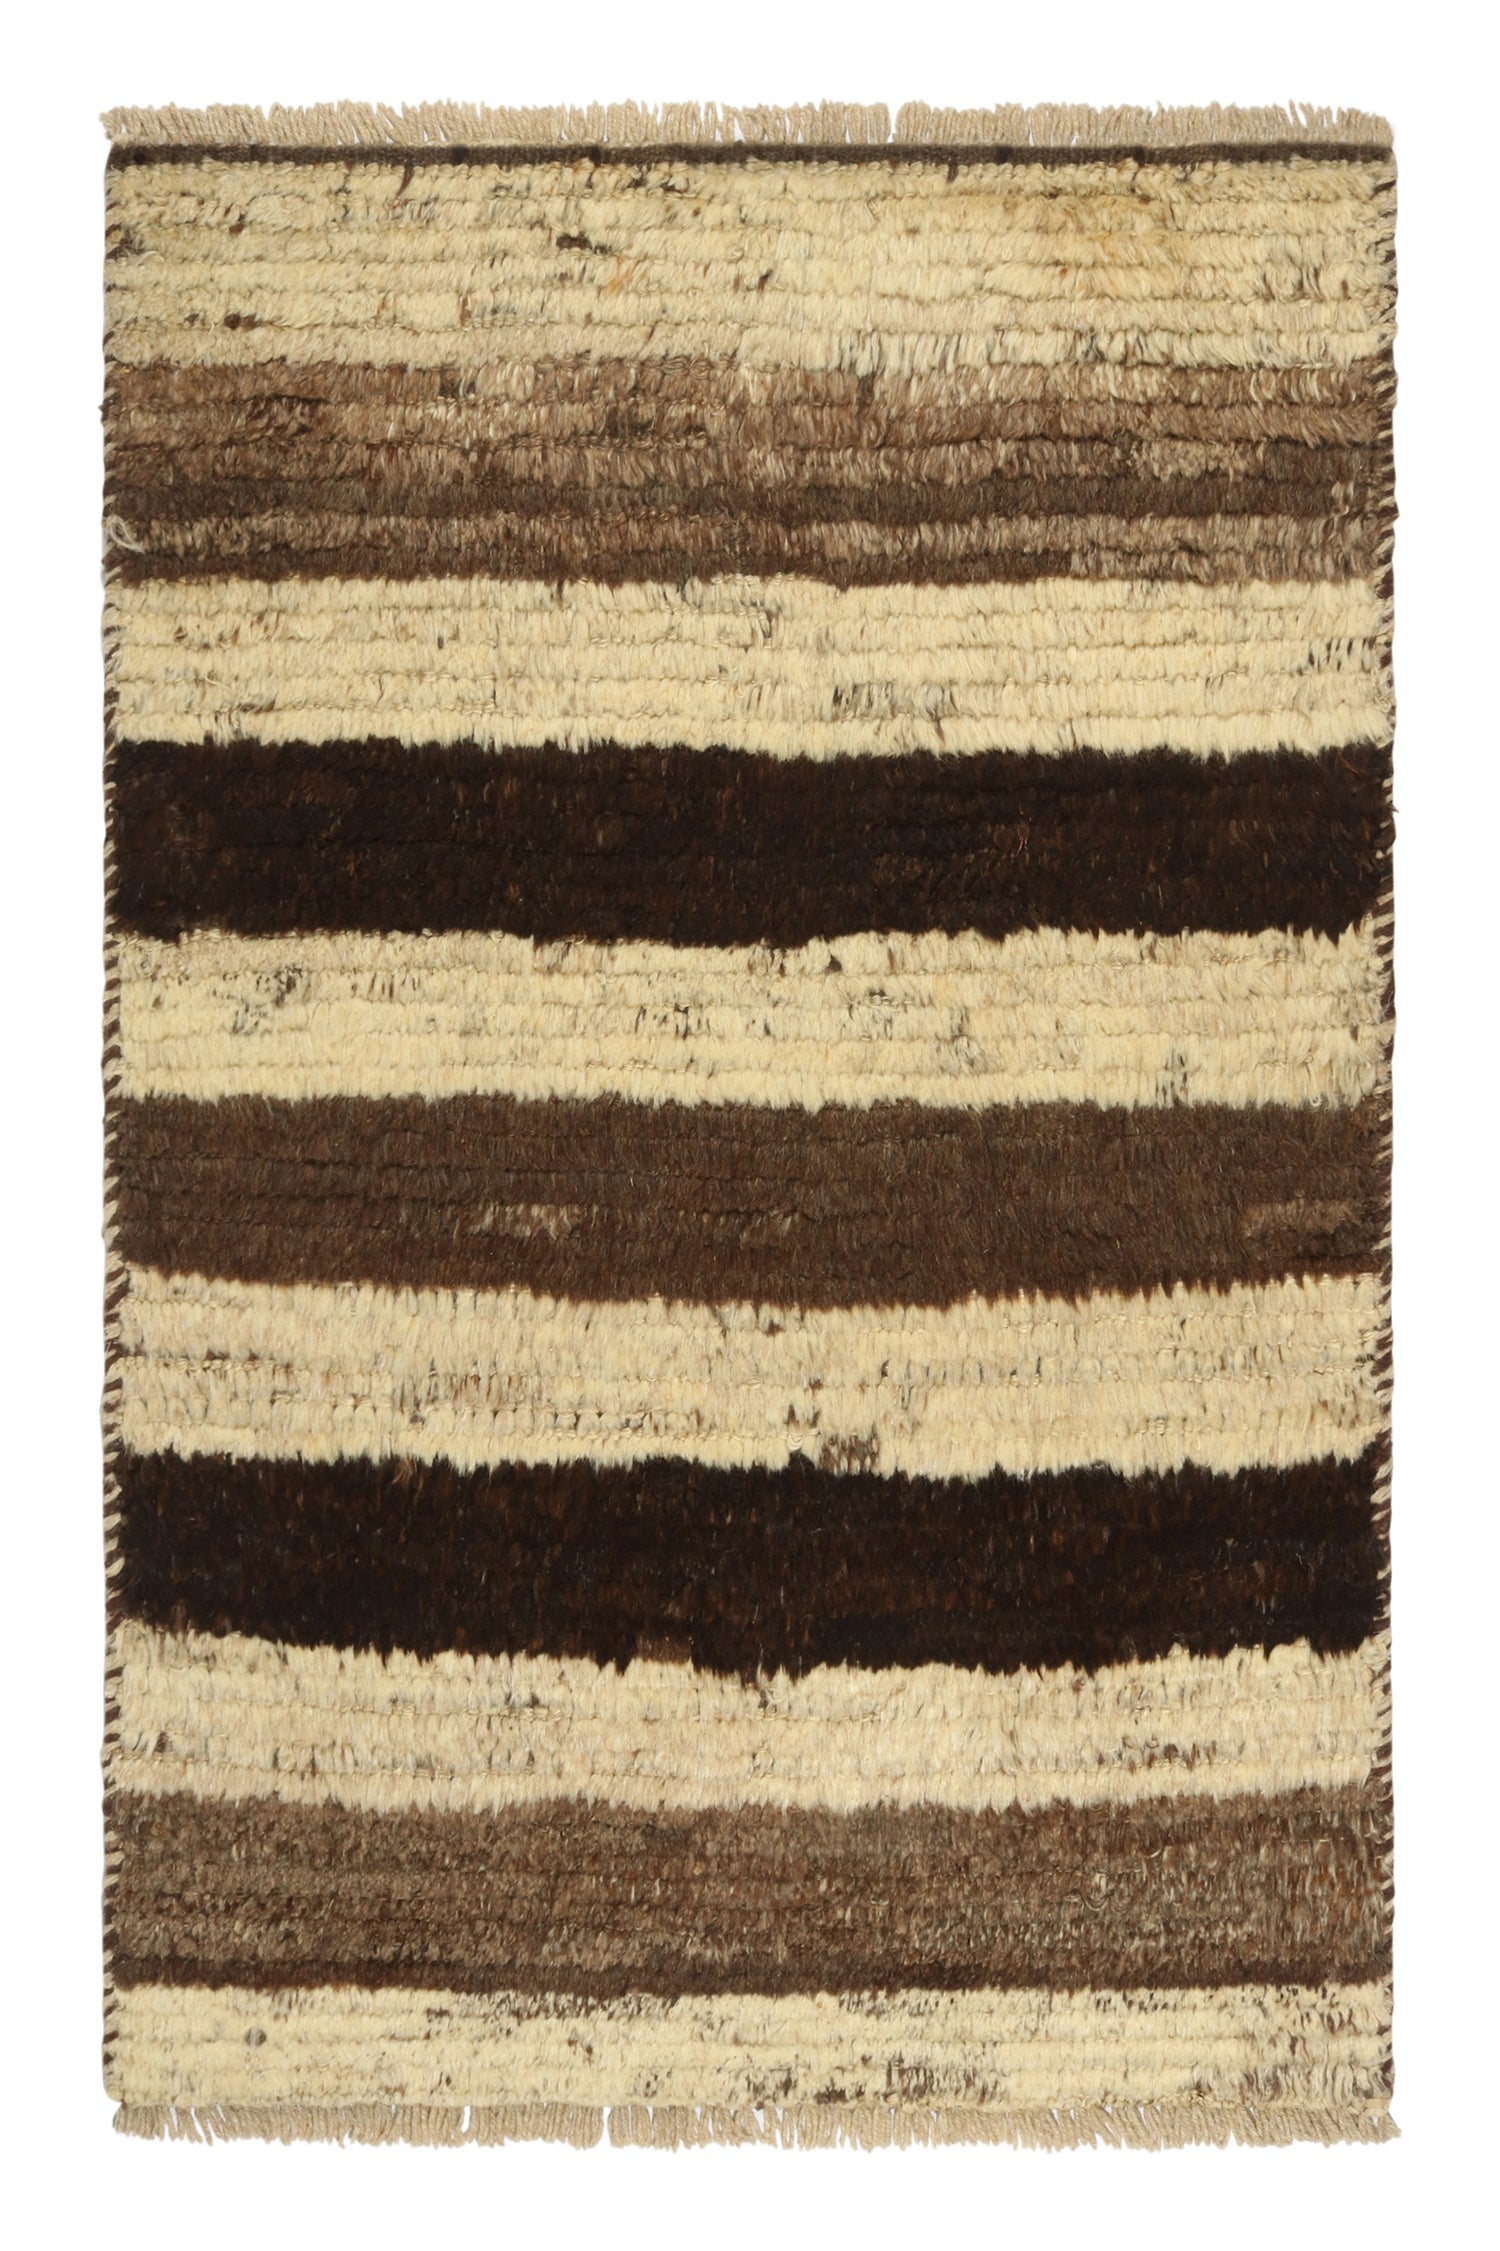 Gabbeh Tribal Teppich im Vintage-Stil mit beige und braunen Streifen von Teppich & Kelim